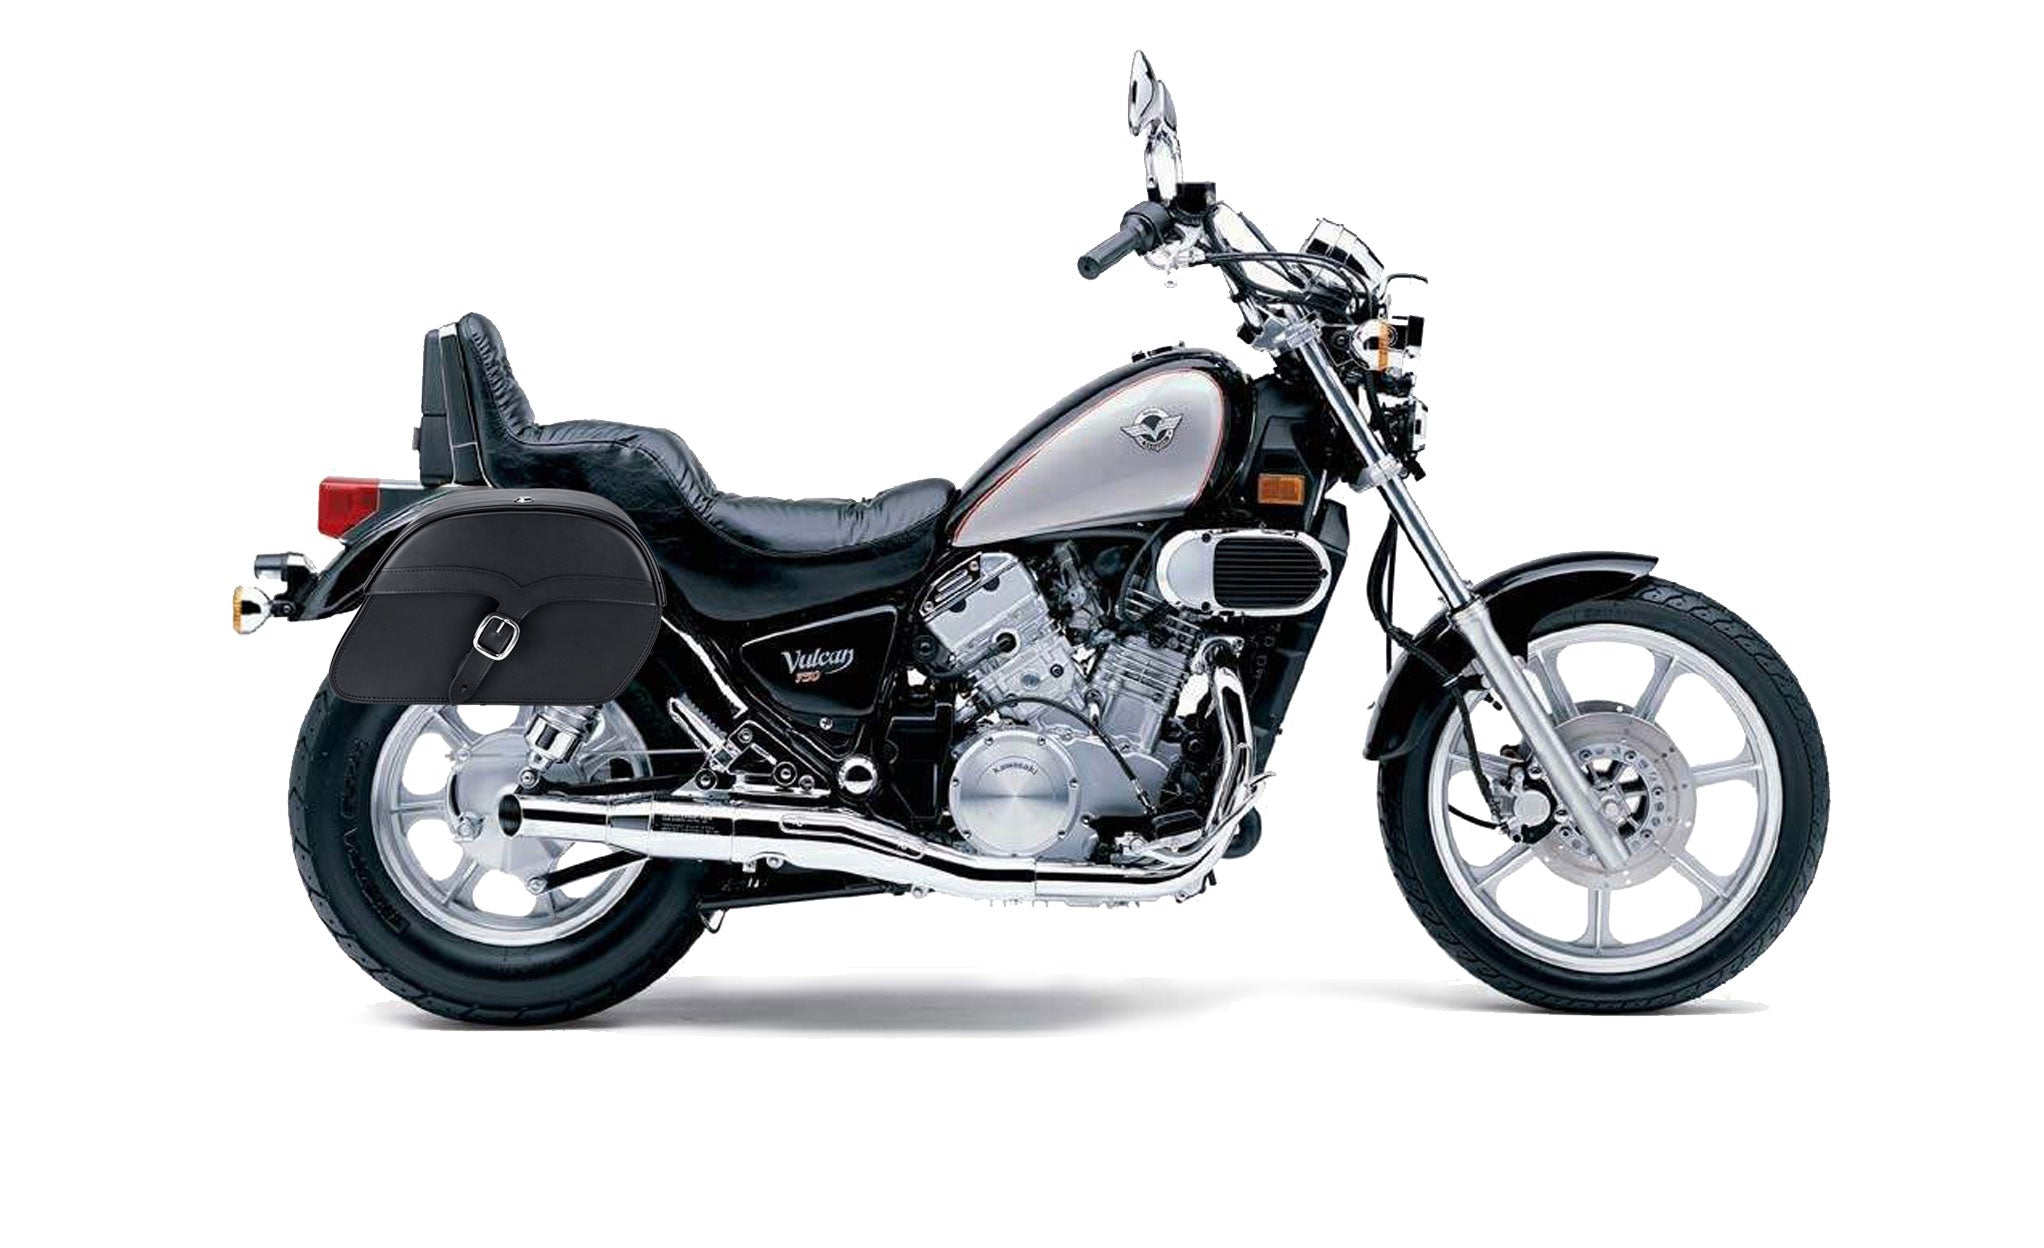 Viking Vintage Medium Kawasaki Vulcan 750 Vn750 Leather Motorcycle Saddlebags on Bike Photo @expand